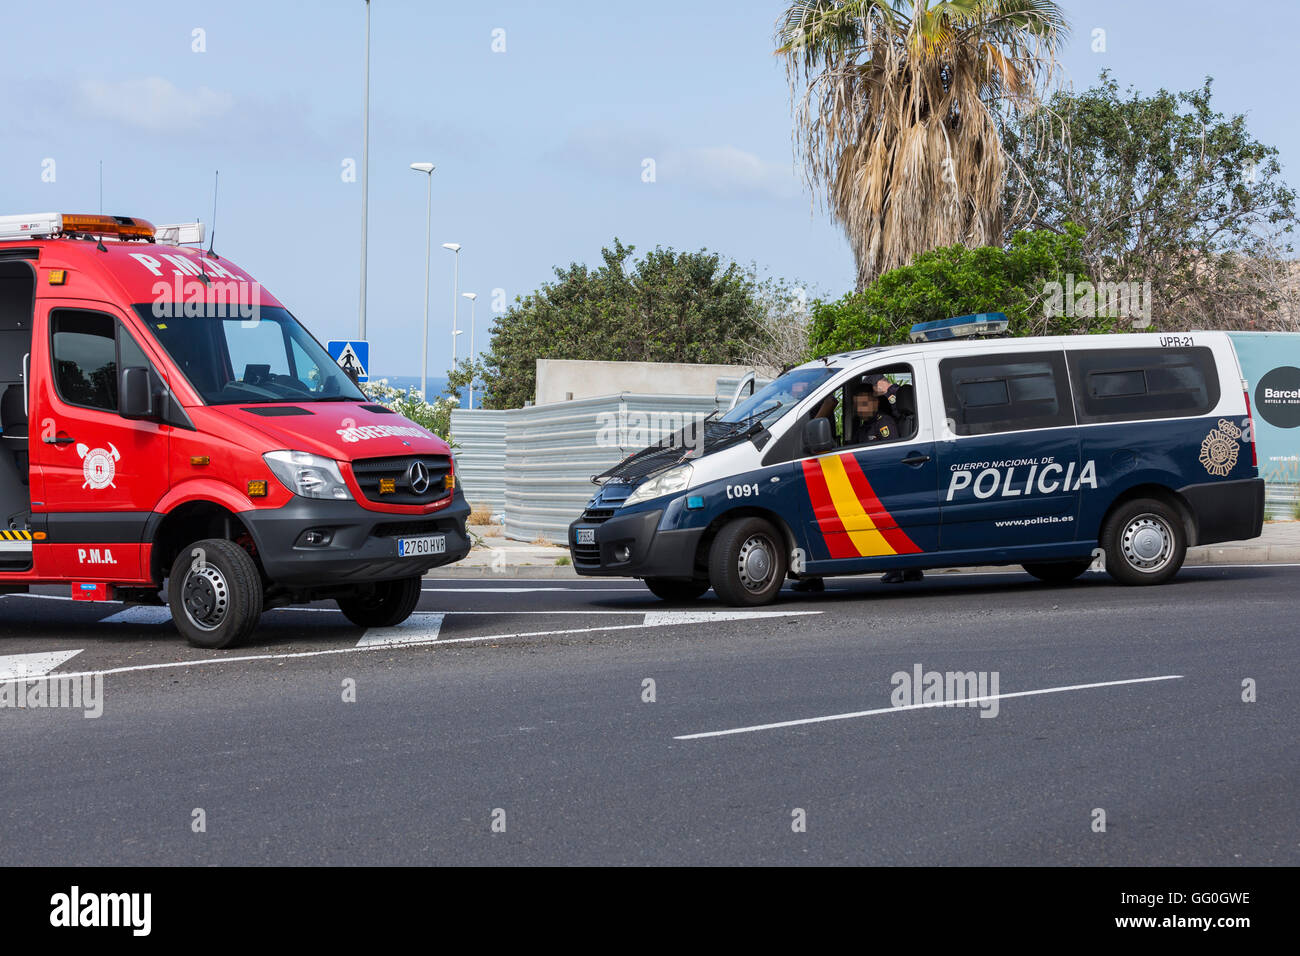 Spanische nationale Polizei-Fahrzeug mit Agenten Gesichter verpixelt Stockfoto